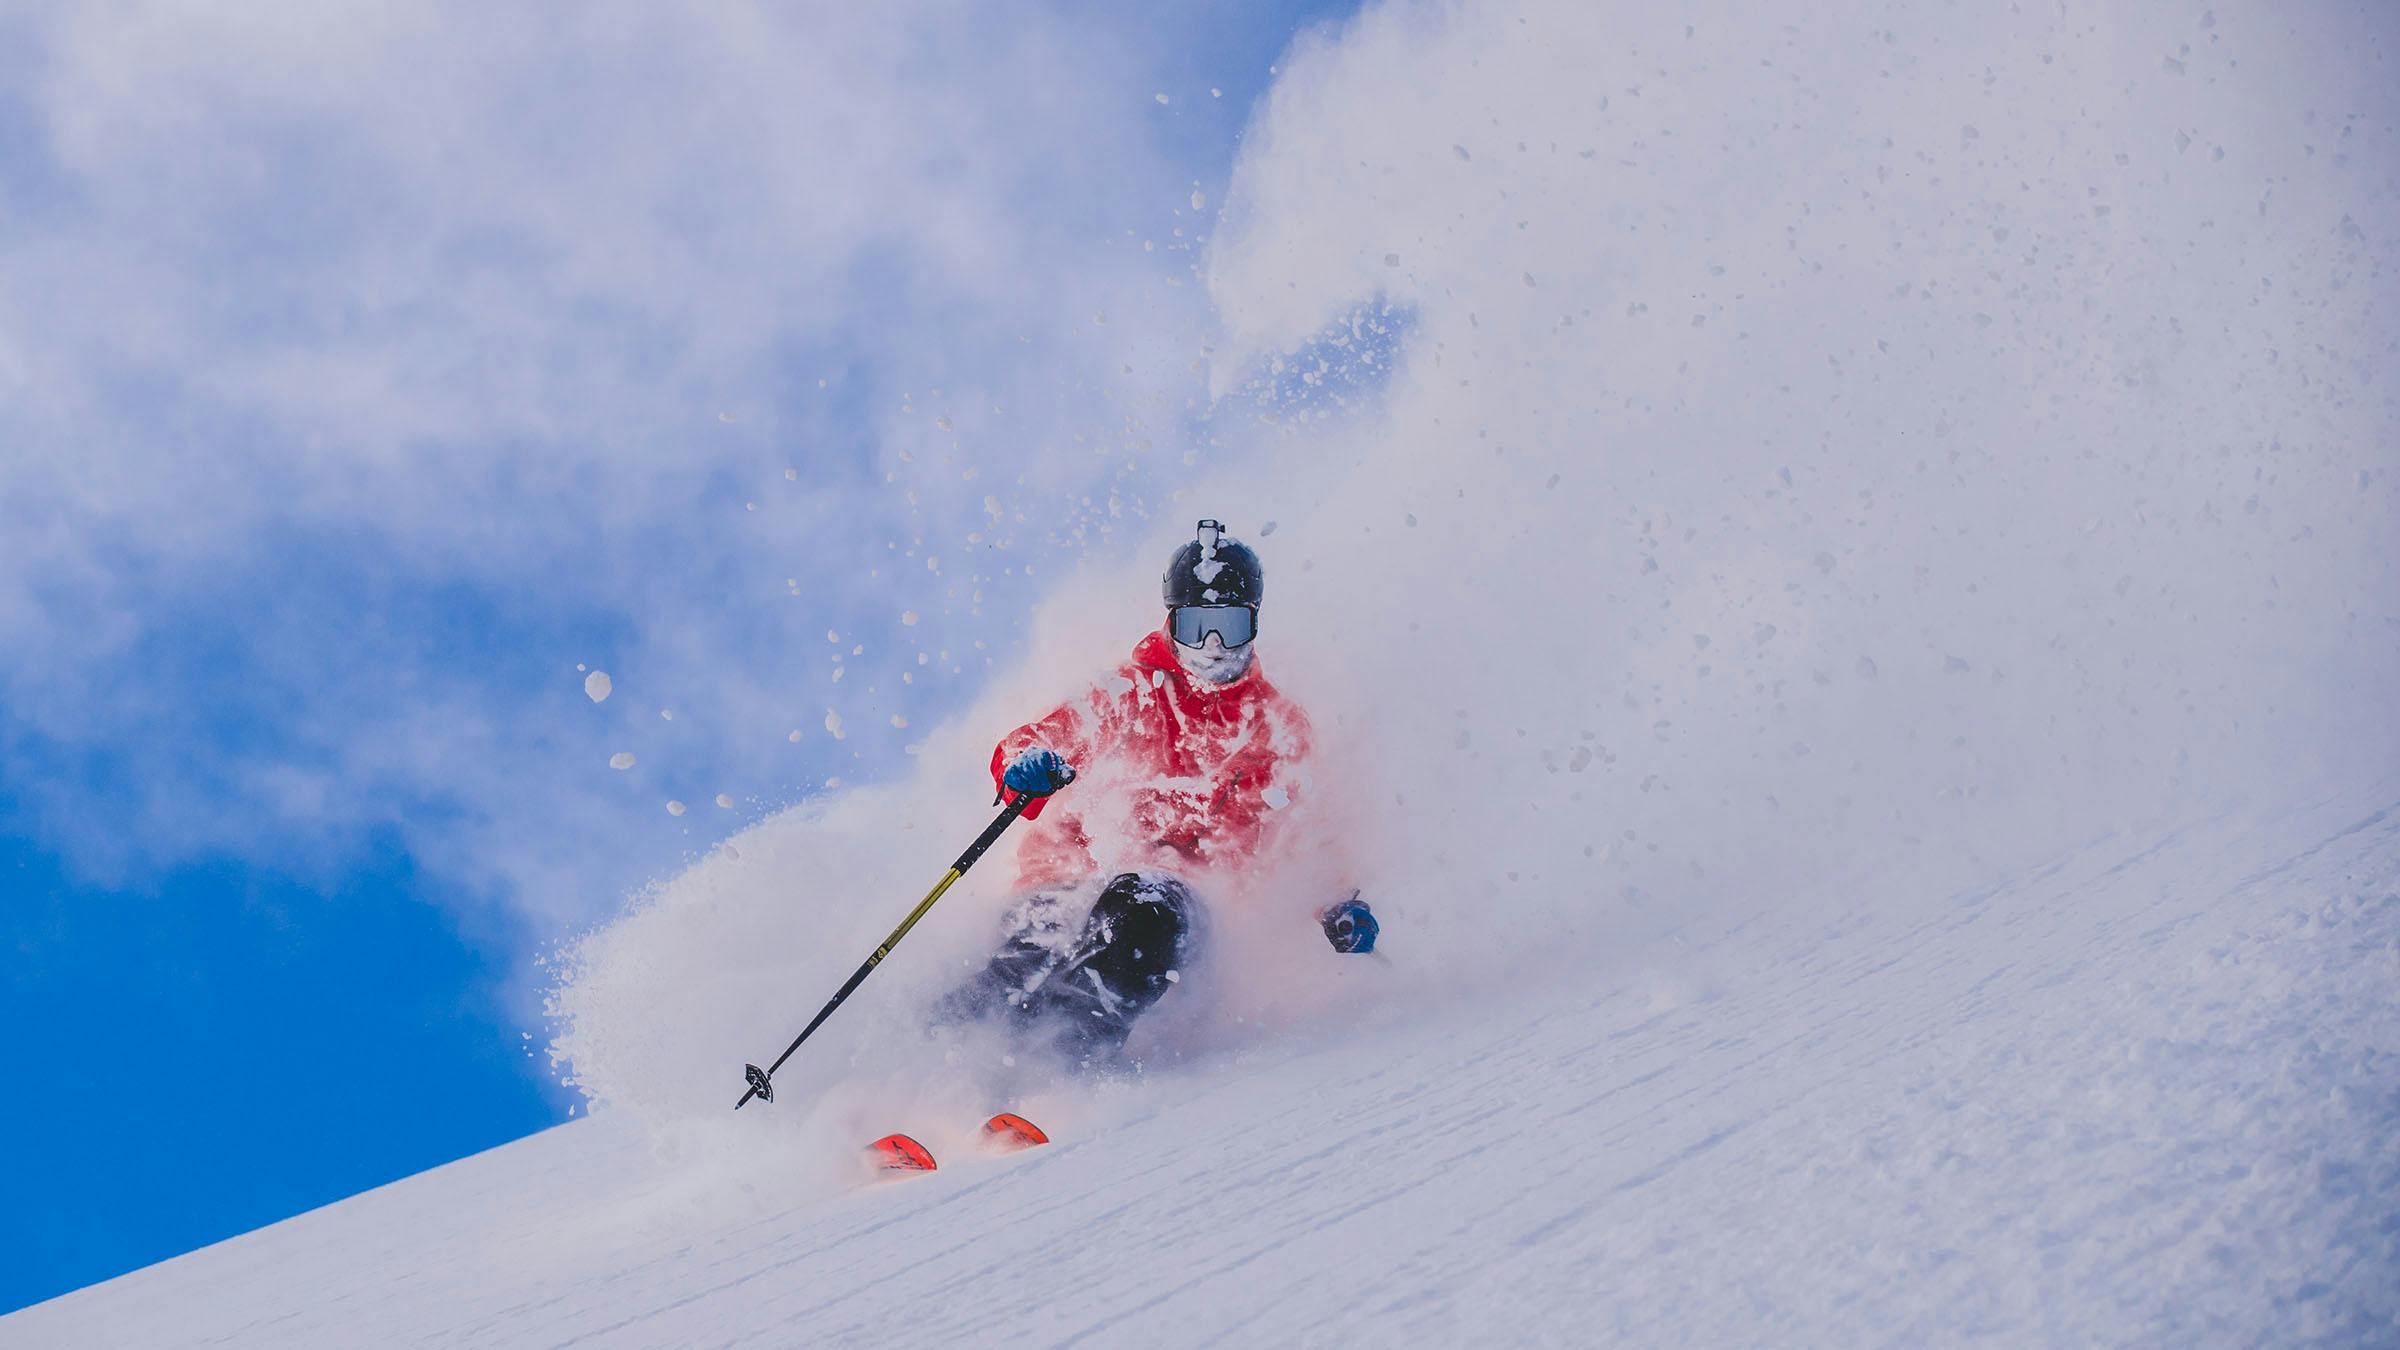 Action shot of powder skiing